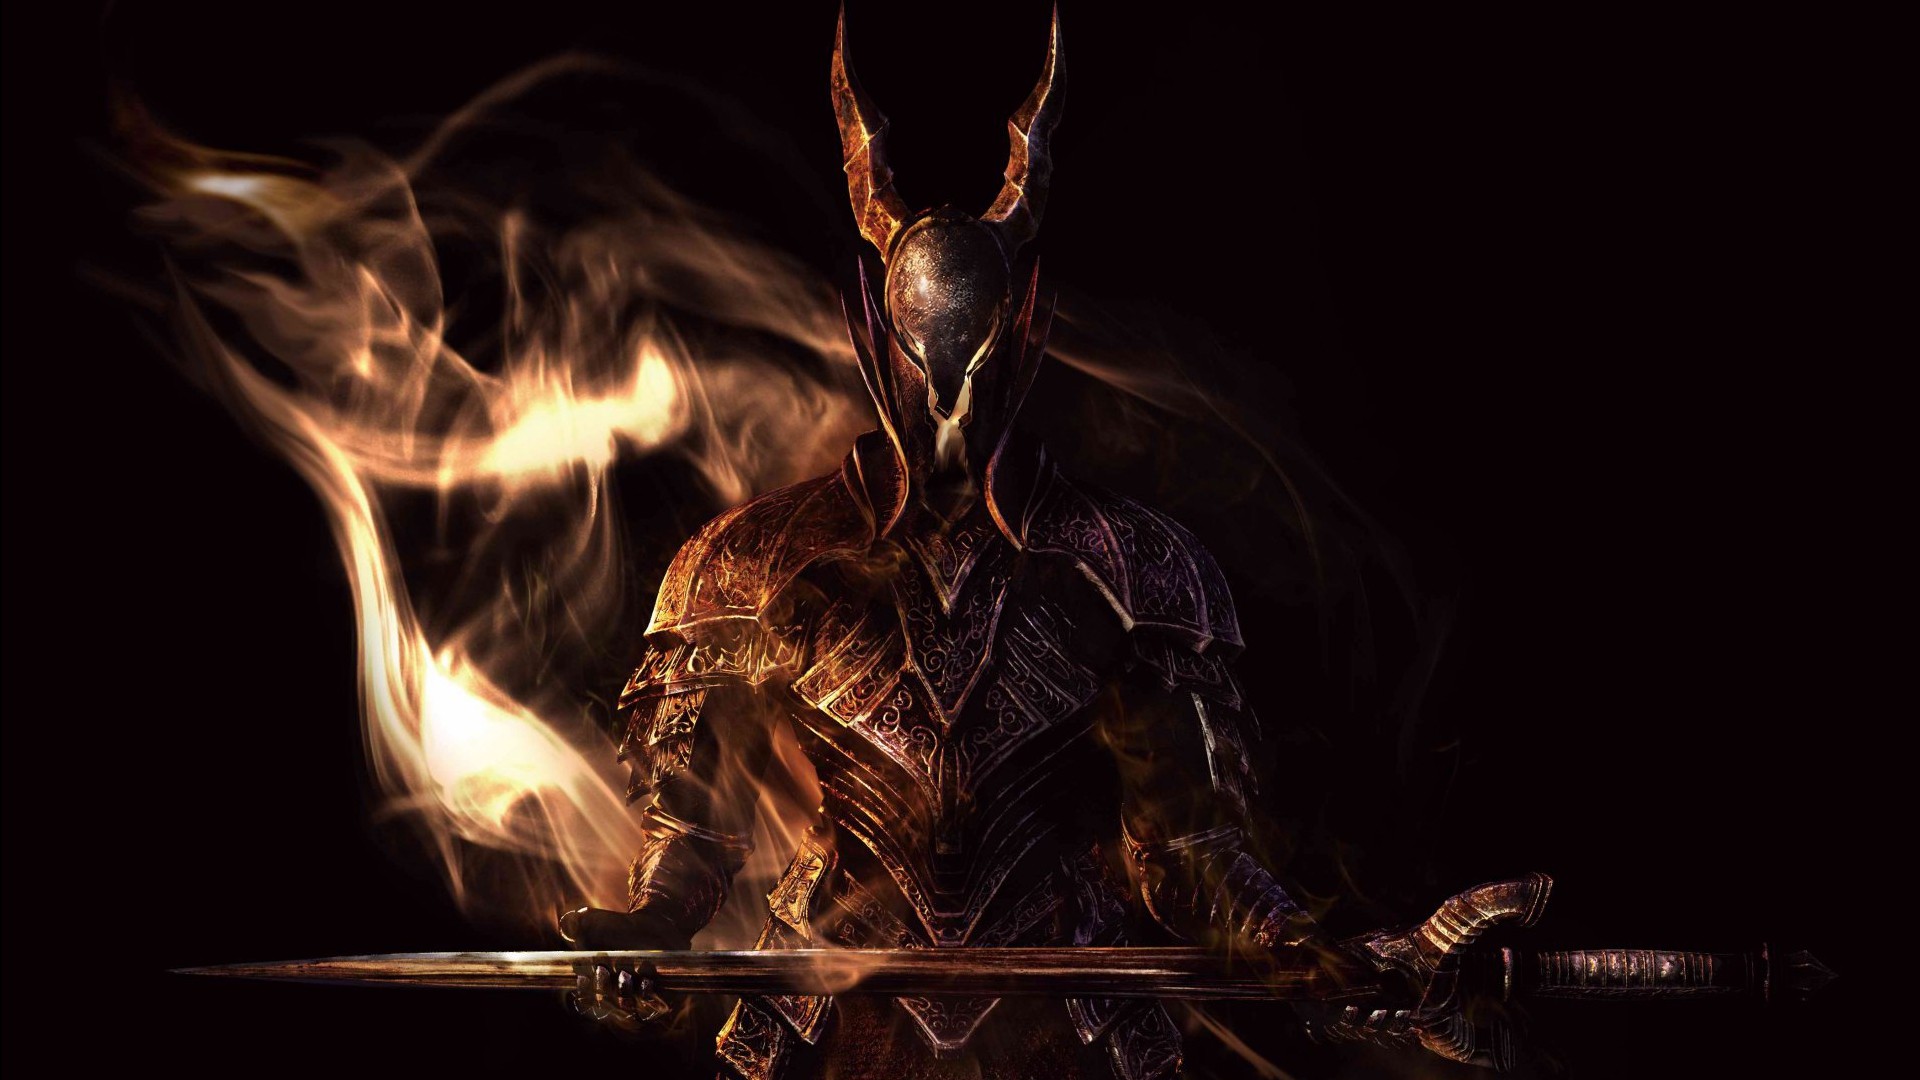 General 1920x1080 sword video games Dark Souls fantasy art video game art 2009 (Year)